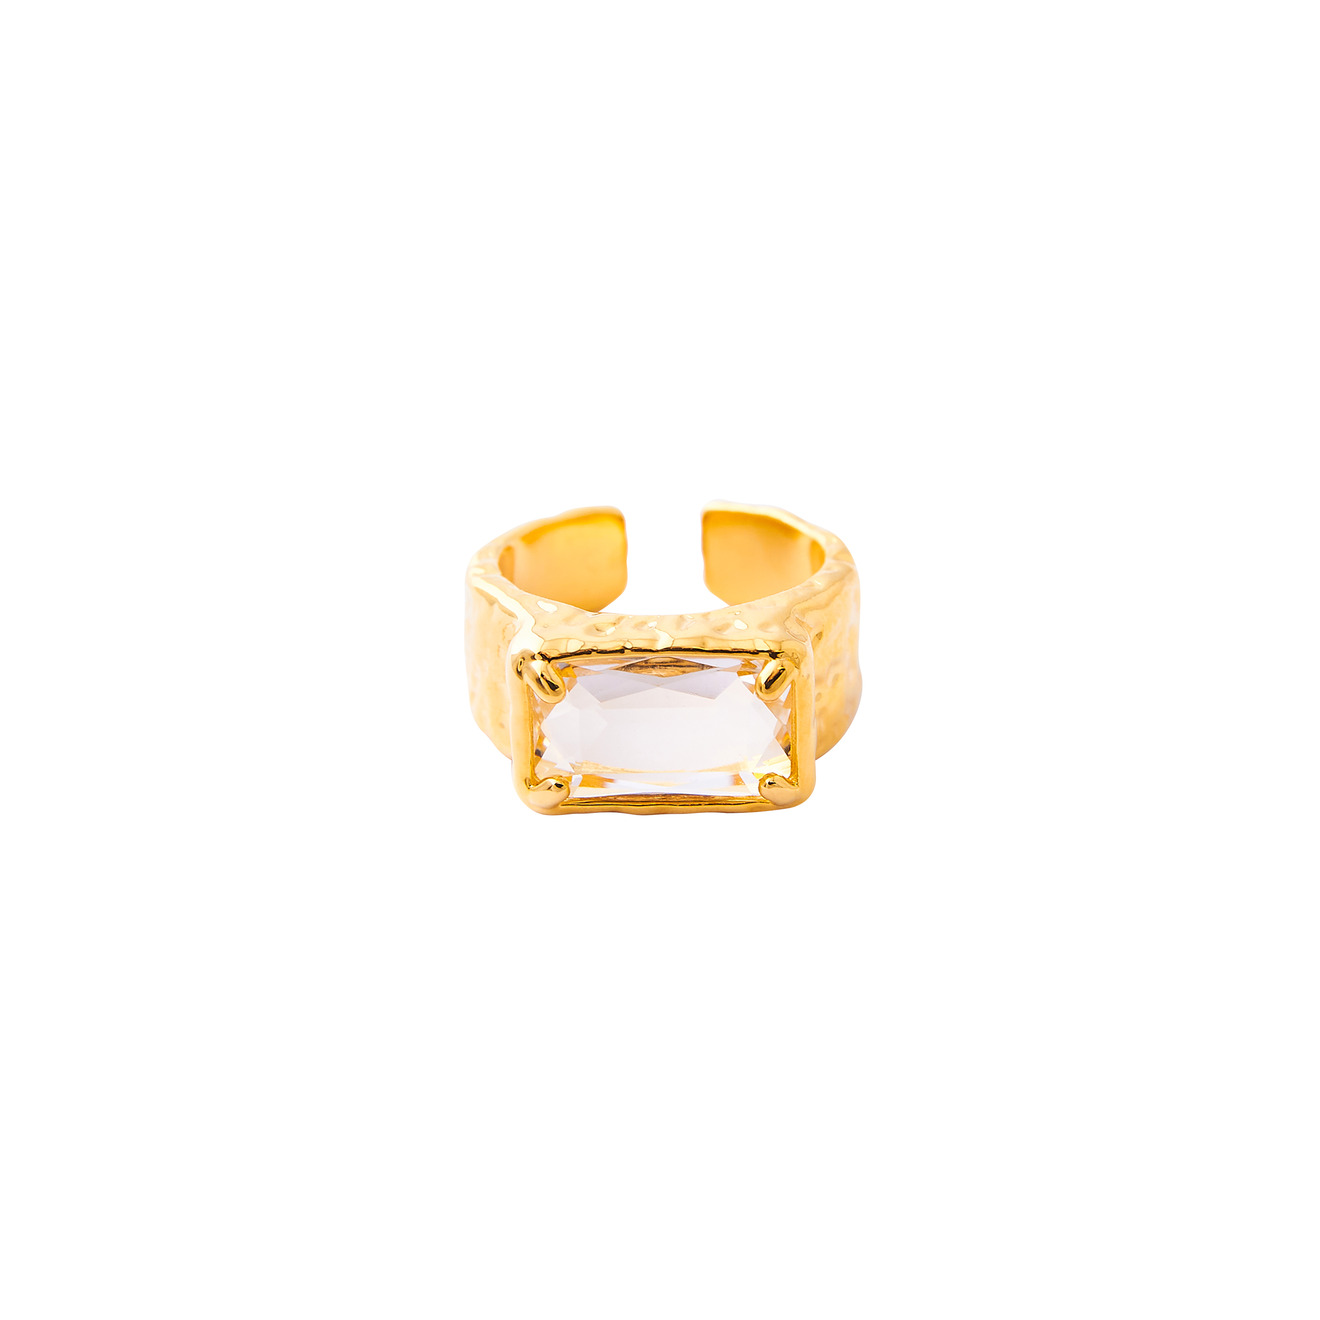 Herald Percy Золотистое кольцо с крупным кристаллом herald percy красное кольцо калиграфия с кристаллом